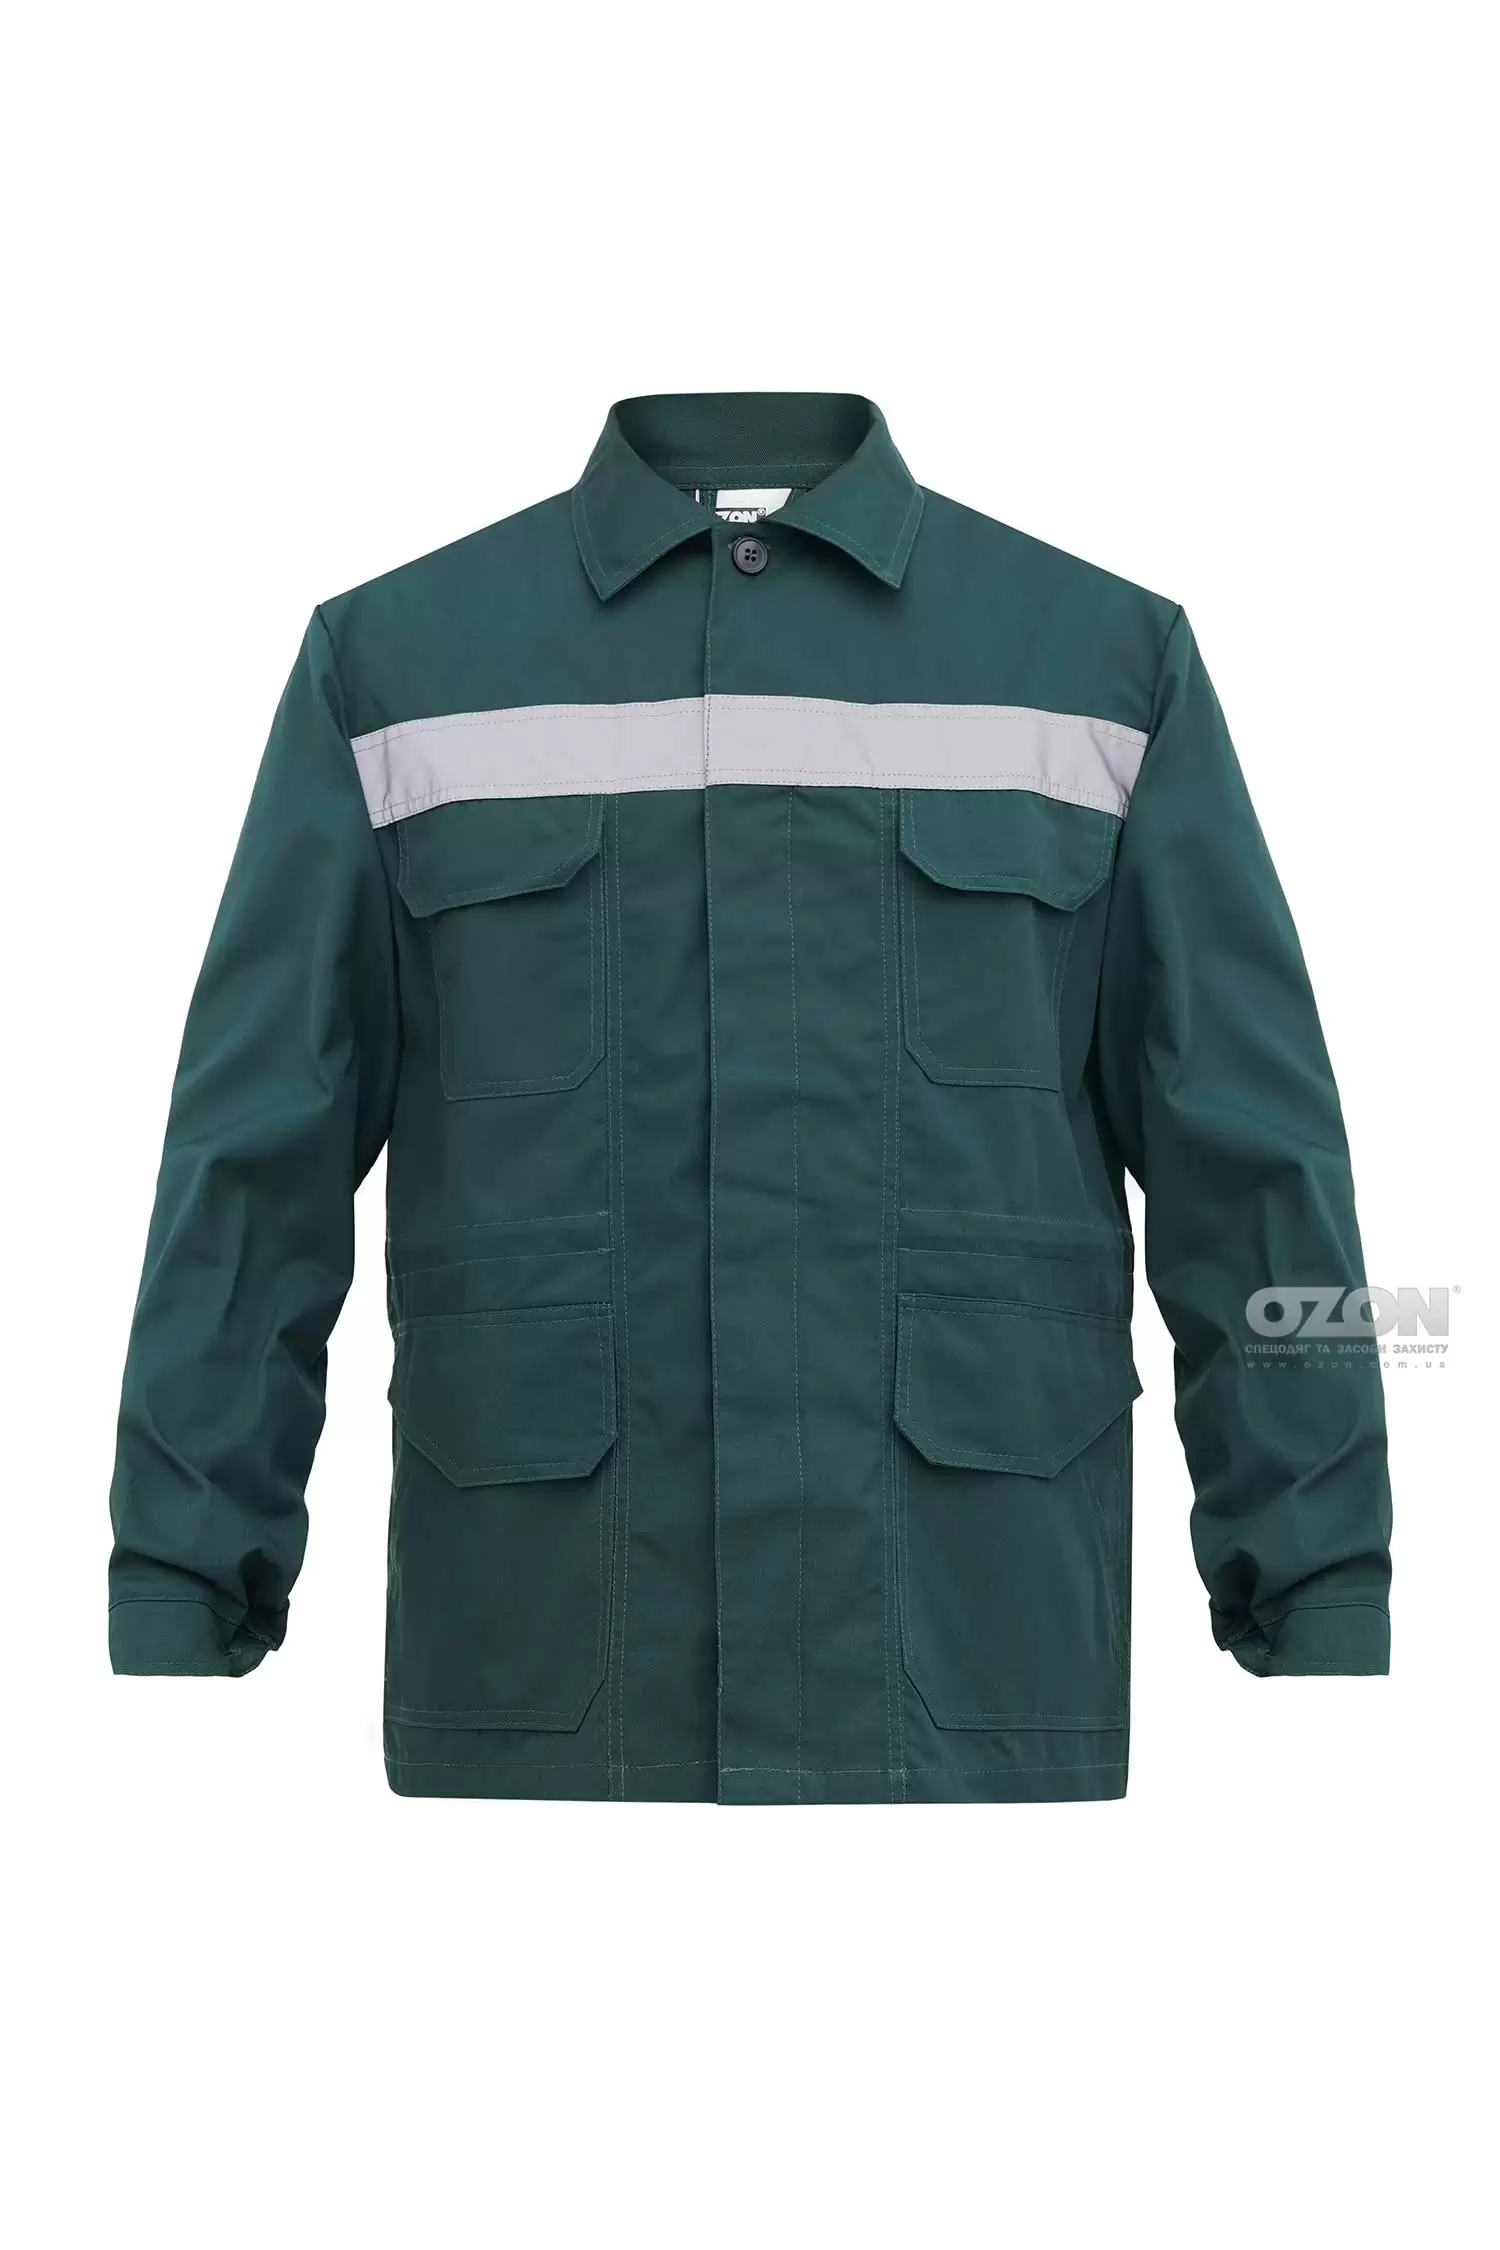 Куртка рабочая Универсал СВЛ К5, зеленый - Фото 1